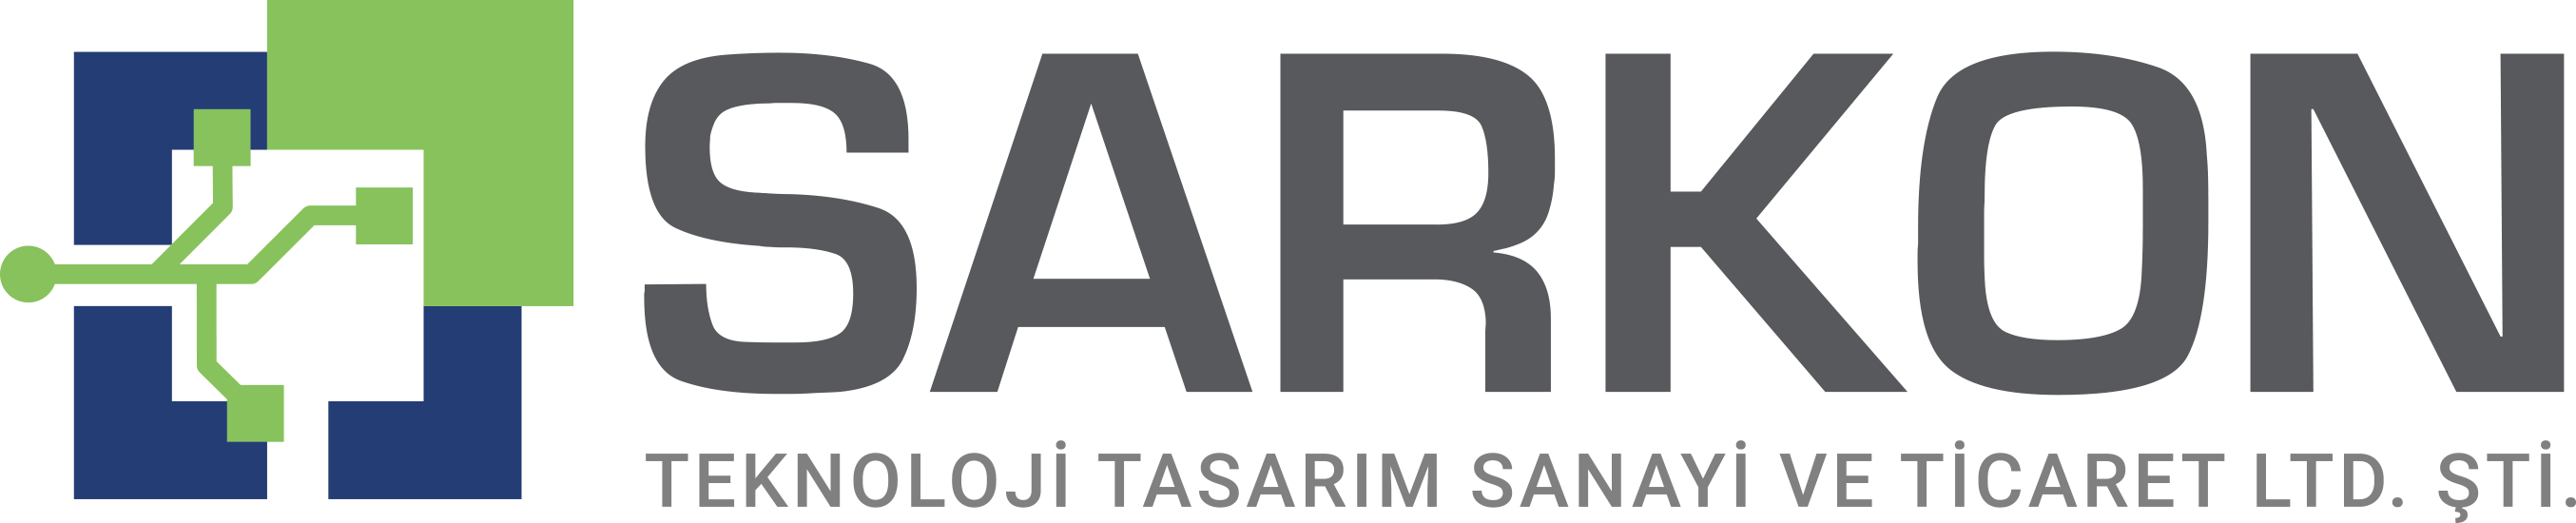 Sarkon Teknoloji Tasarım Sanayi Ve Ticaret Limited Şirketi Logosu